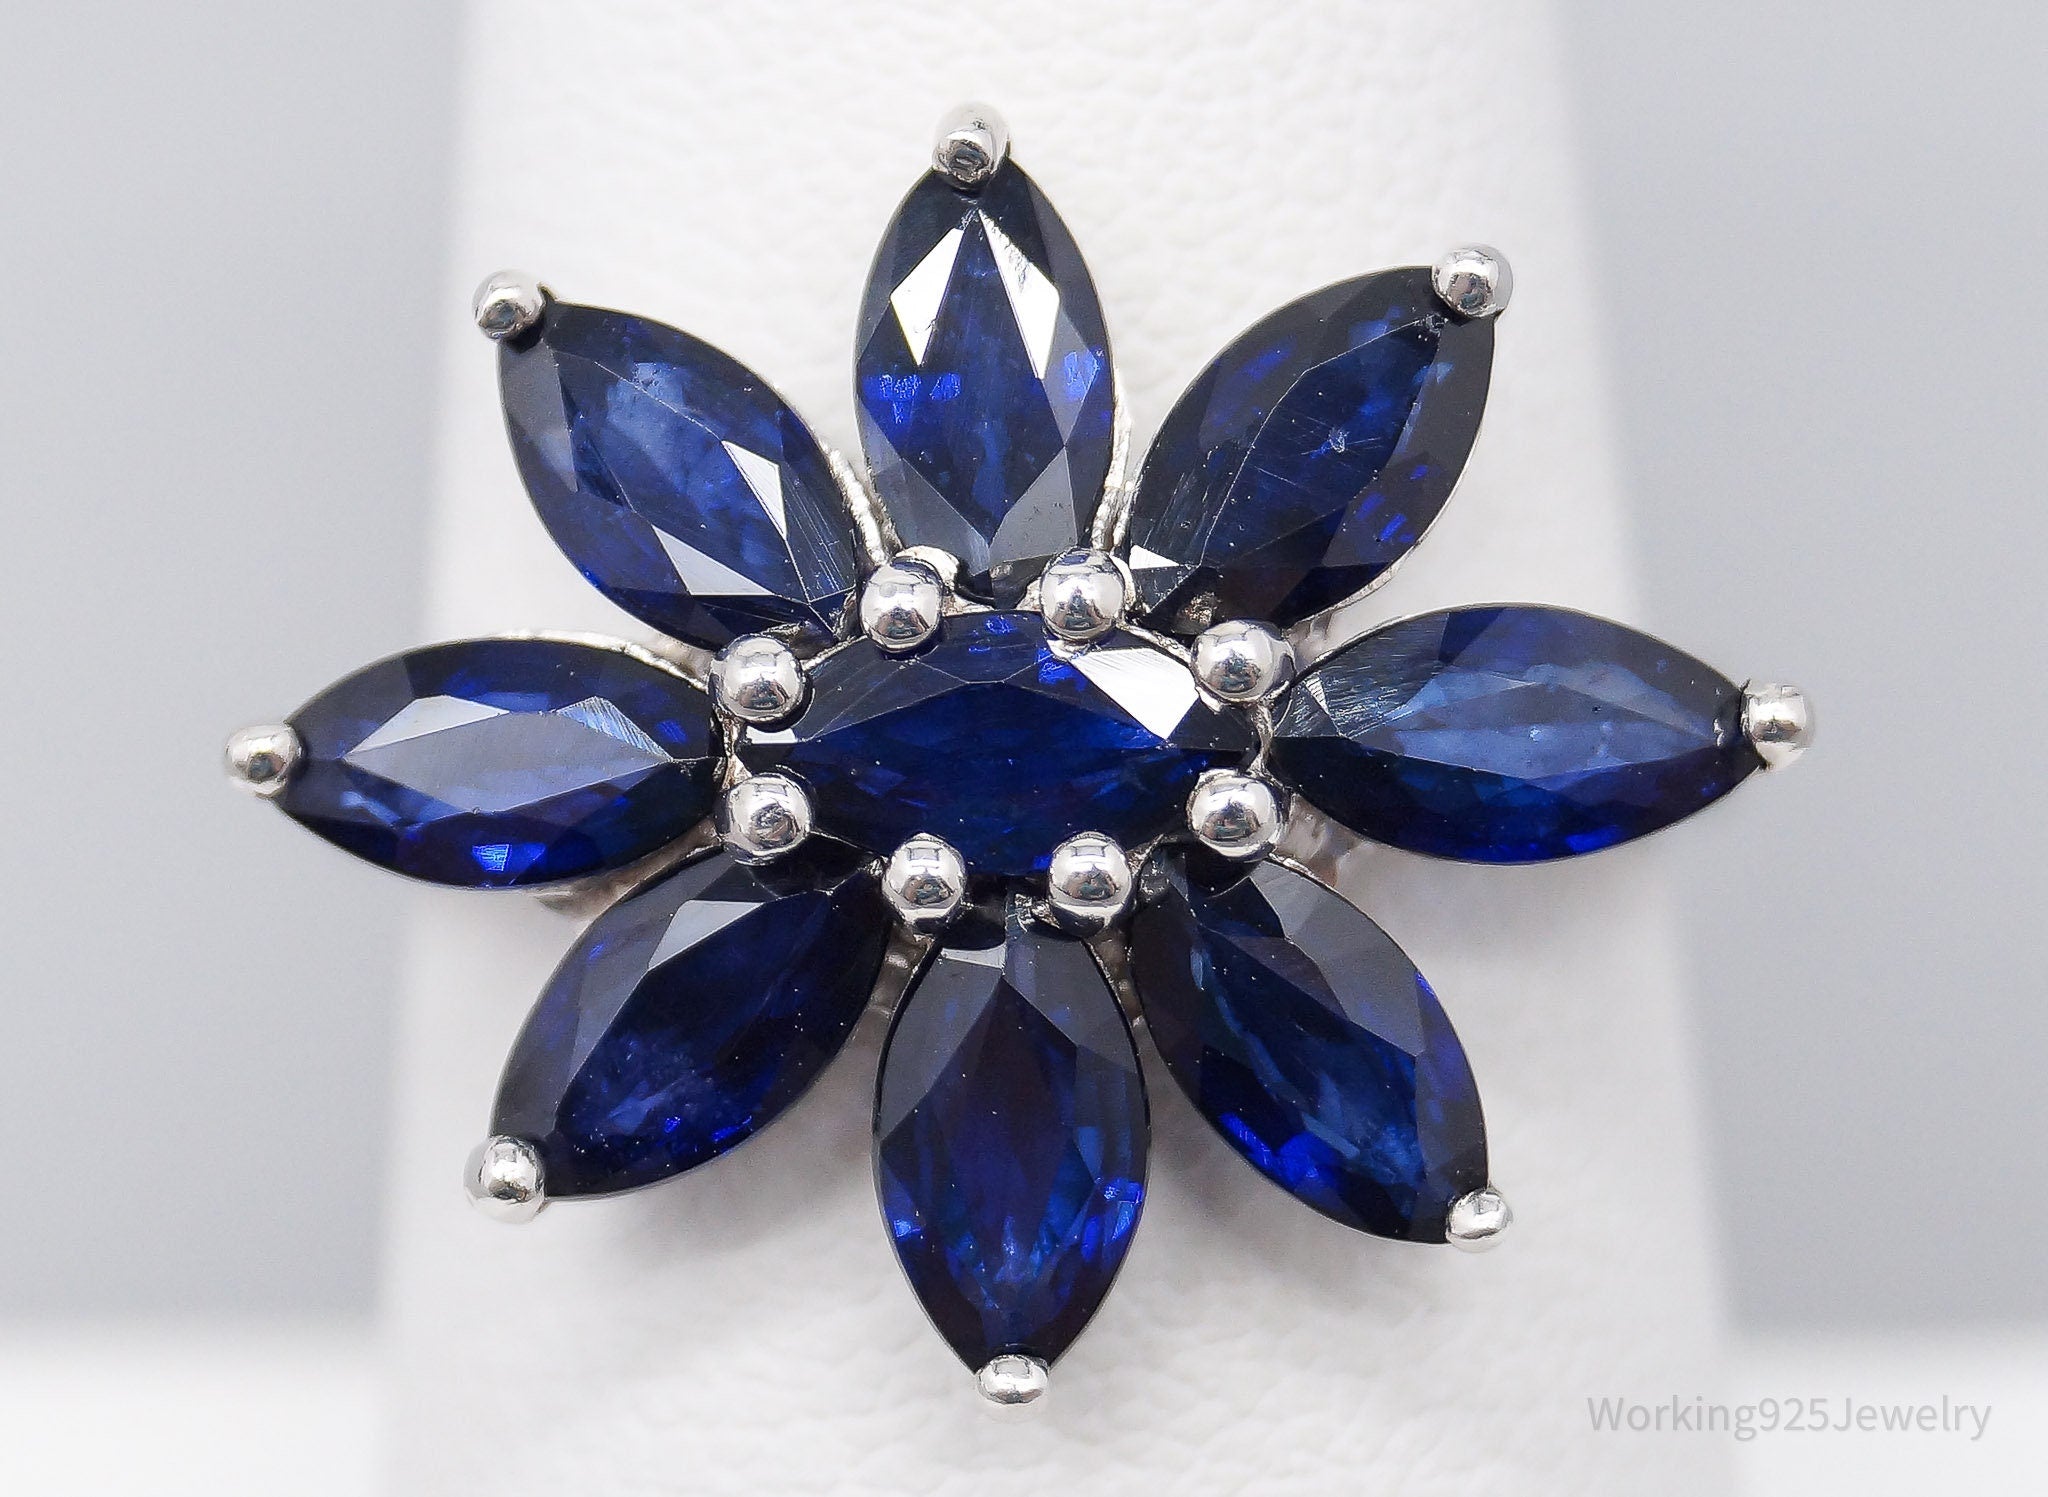 JTV TGGC Blue Sapphire Flower Sterling Silver Ring - Size 7.25